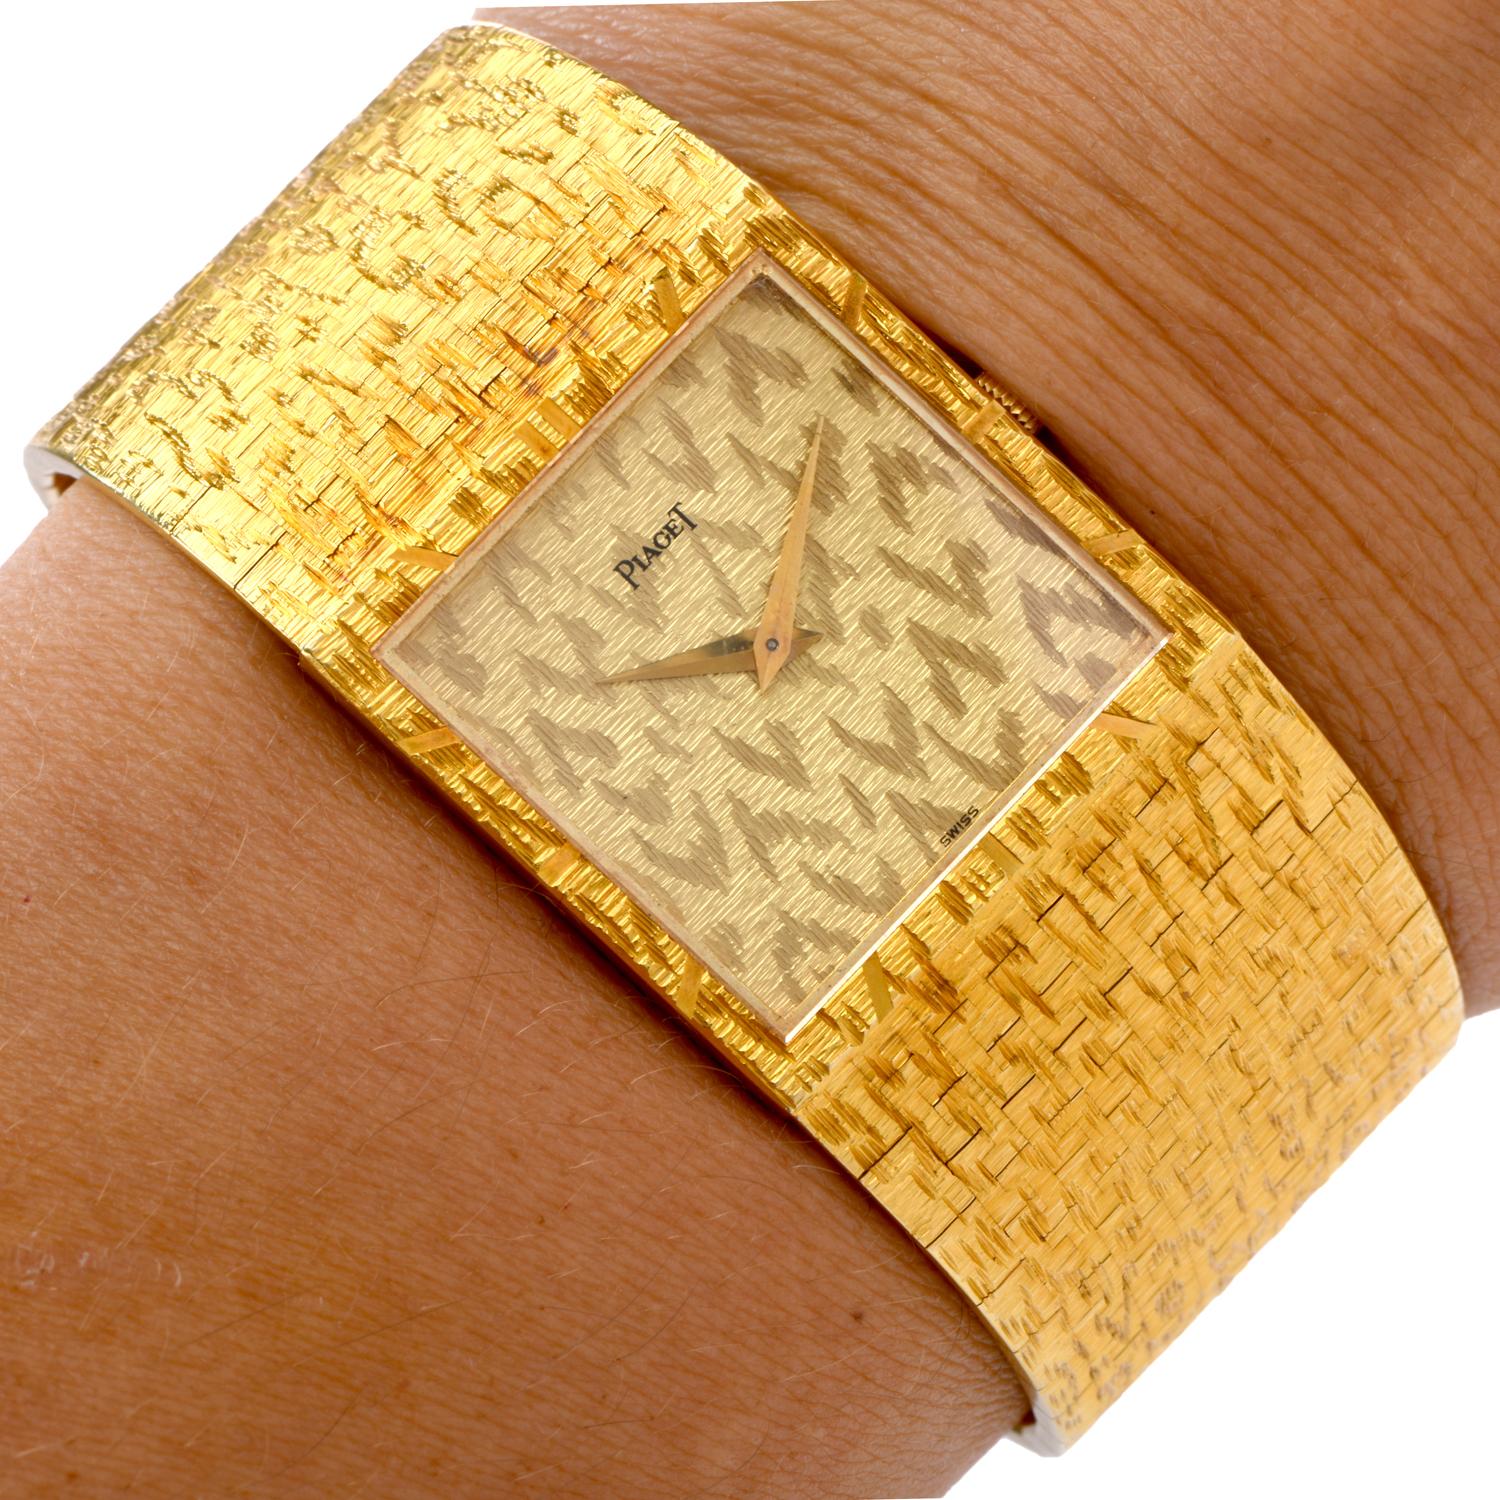 Retro 1960s Vintage Piaget Ref. 935A68 18 Karat Yellow Gold Textured Watch